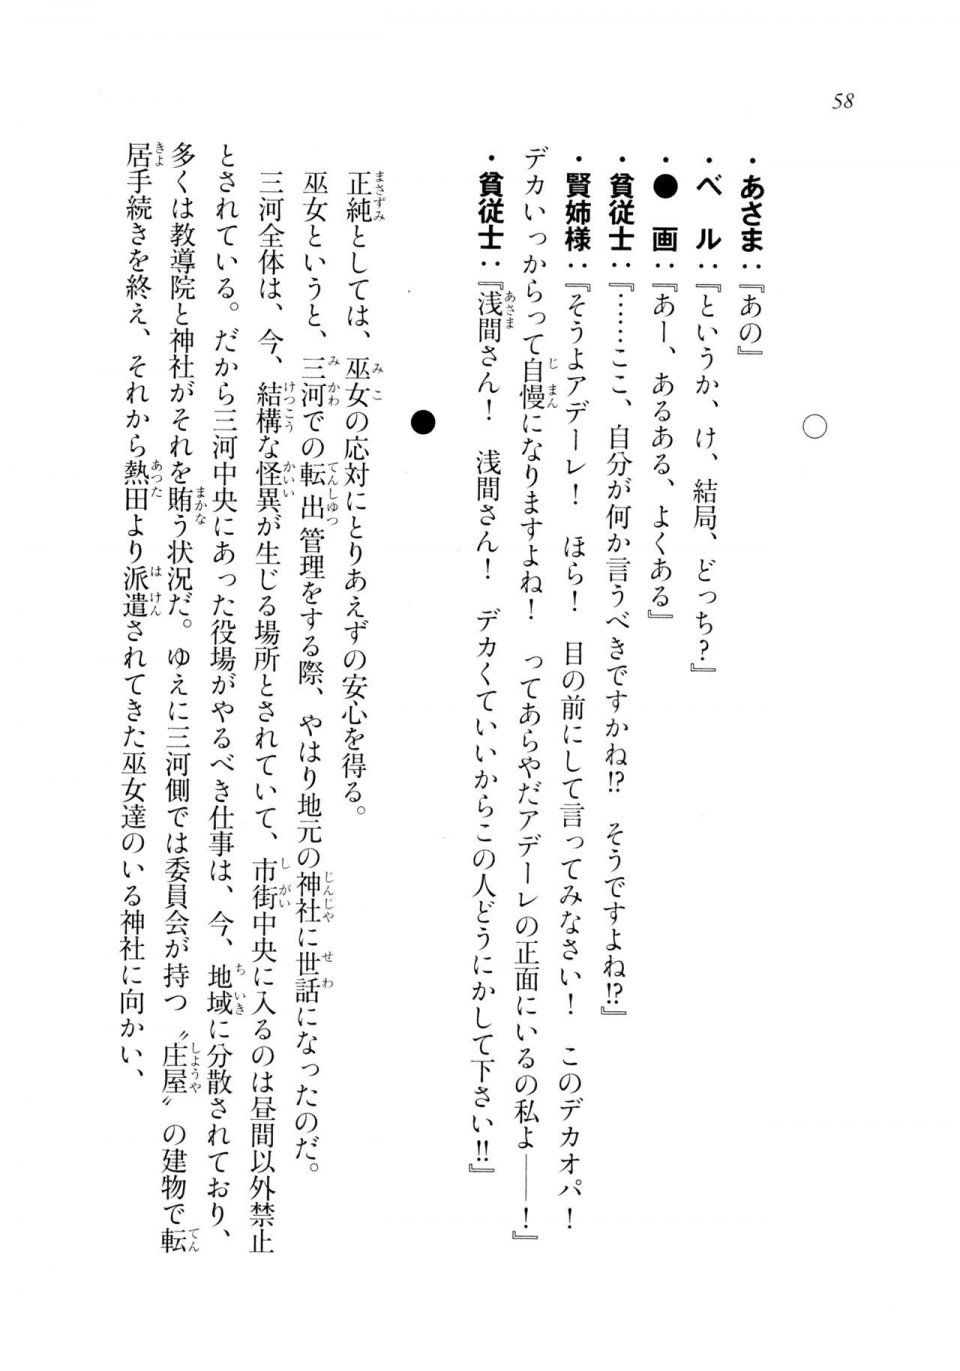 Kyoukai Senjou no Horizon LN Sidestory Vol 2 - Photo #56